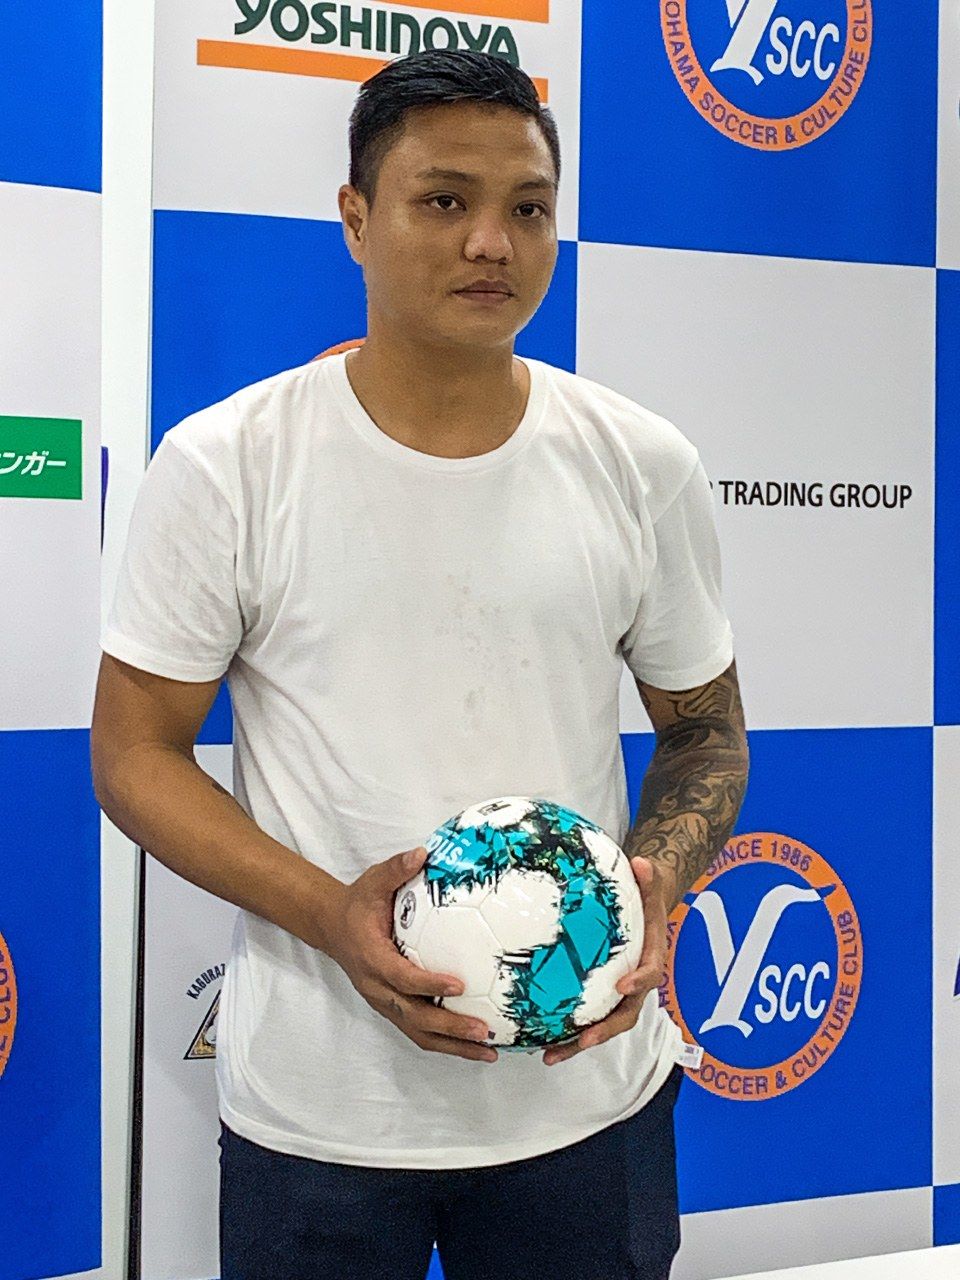 بياي ليان أونغ يتحدث إلى الصحافة في يوكوهاما في أكتوبر/ تشرين الأول 2021 بعد إخفاقه في الدخول ضمن تشكيلة الفريق للمبارة الأولى.